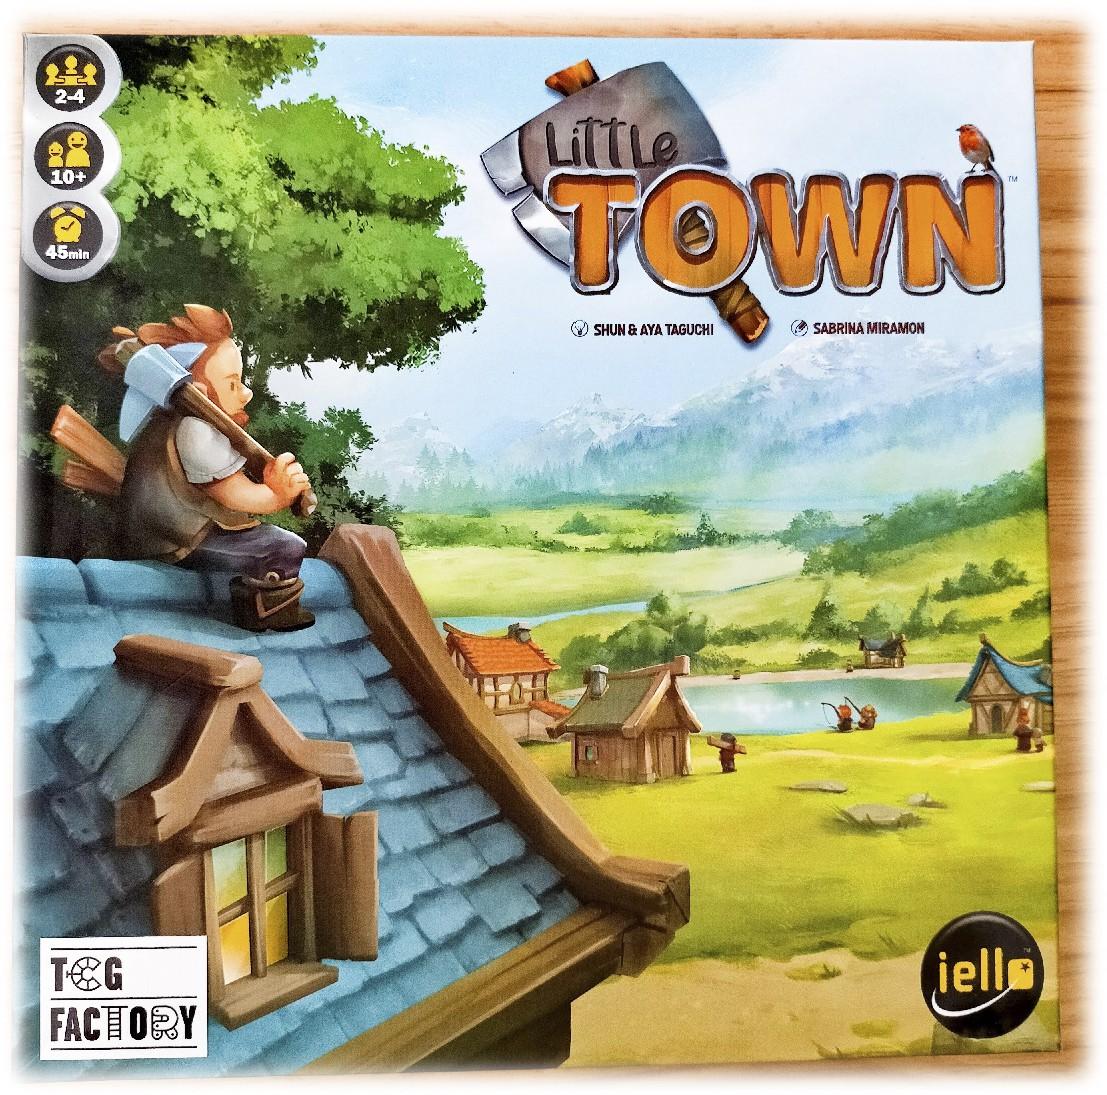 Little town